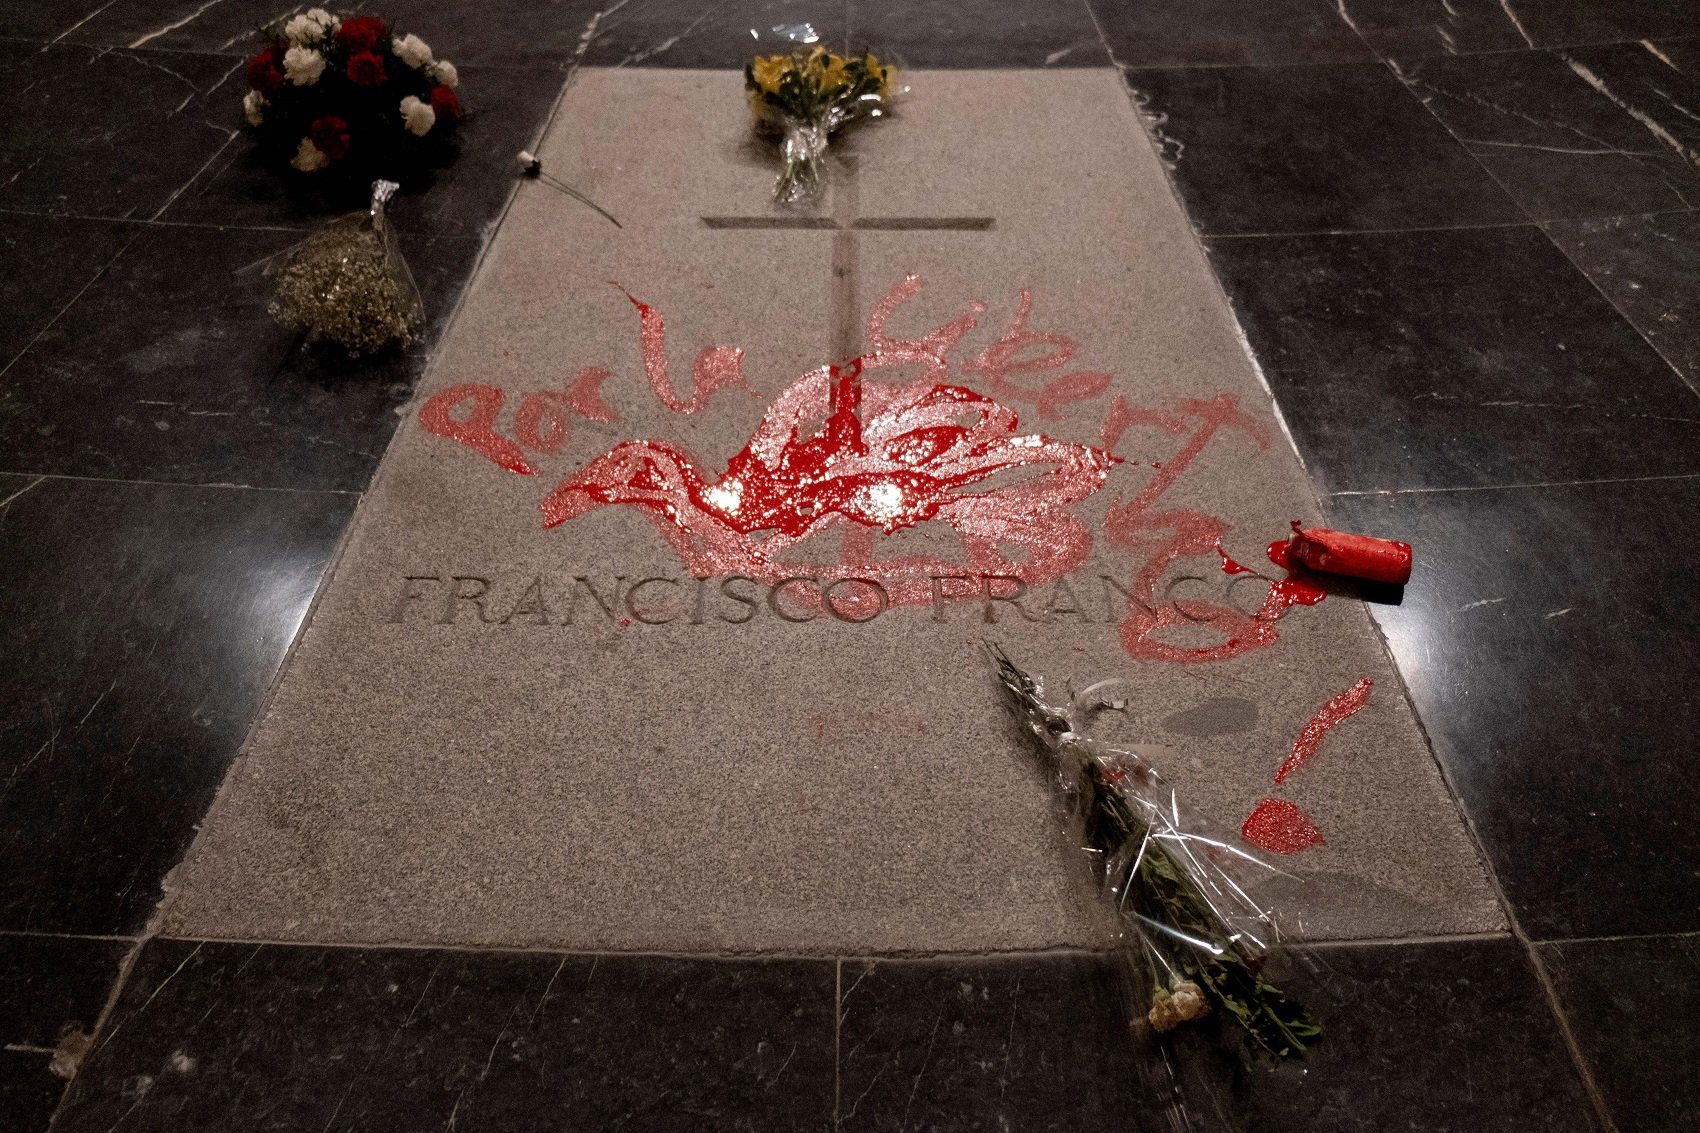 Un artista pinta de rojo la tumba de Franco